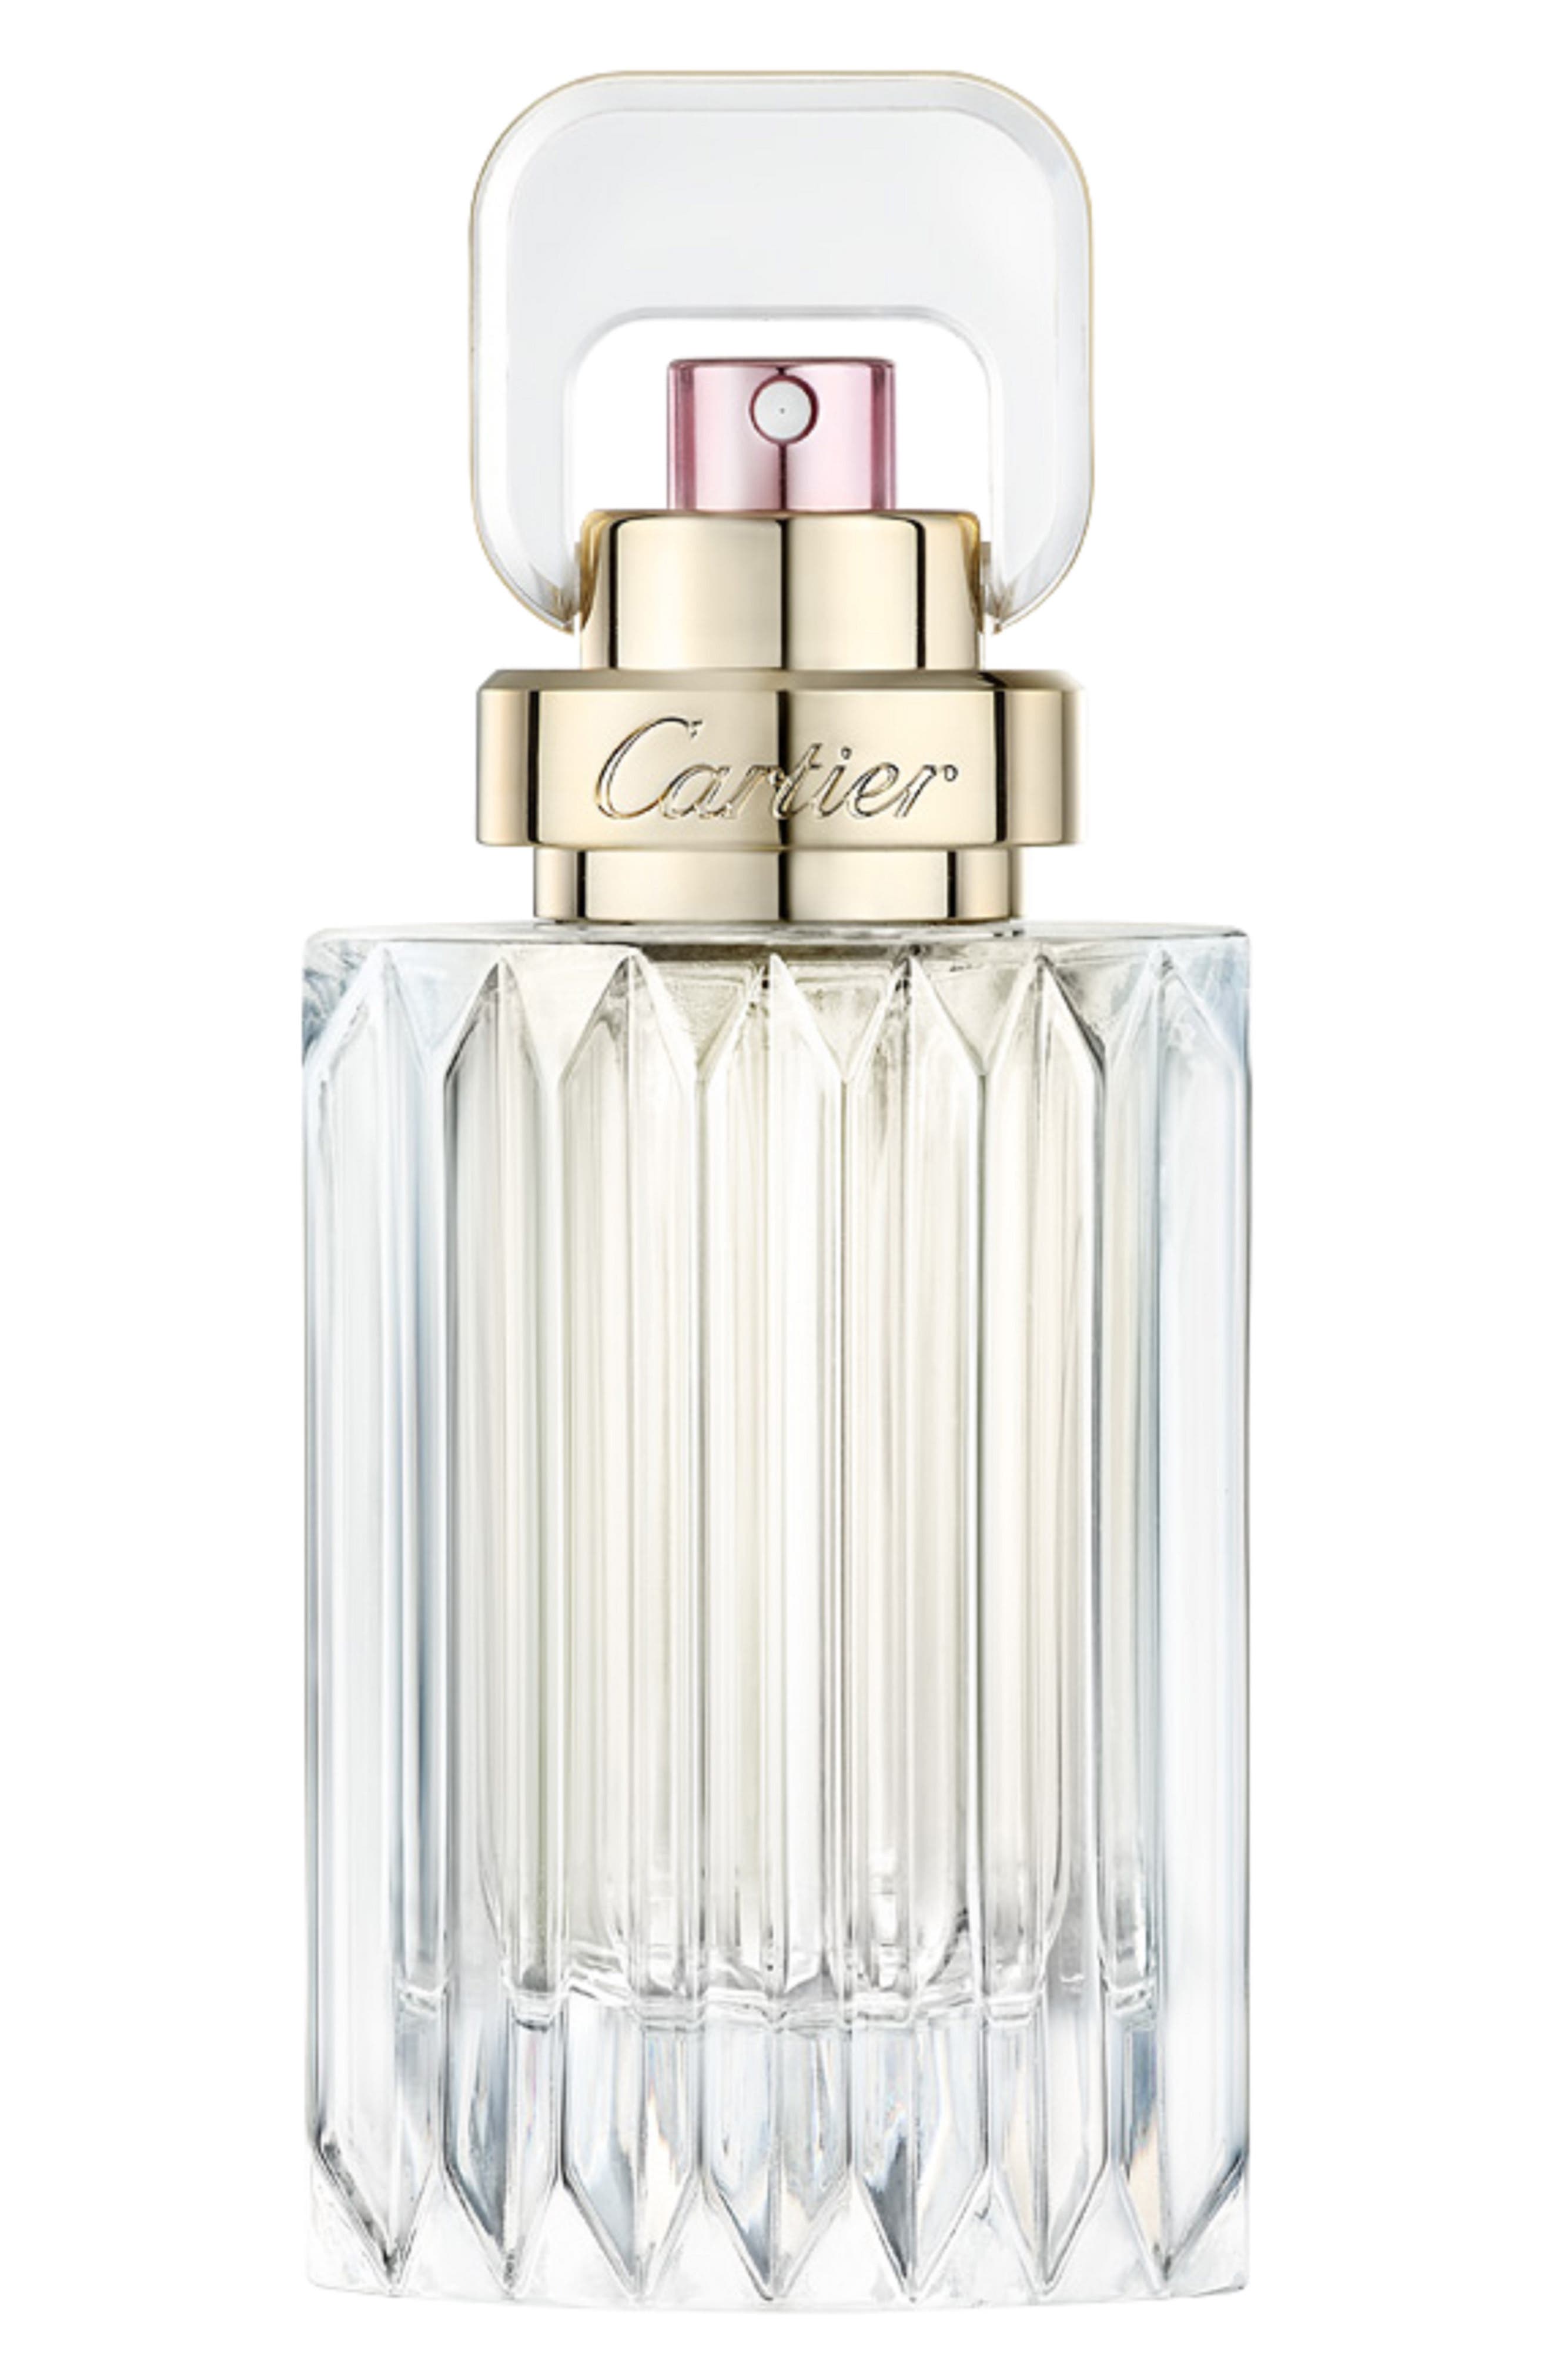 Cartier Carat Eau de Parfum at Nordstrom, Size 1.6 Oz